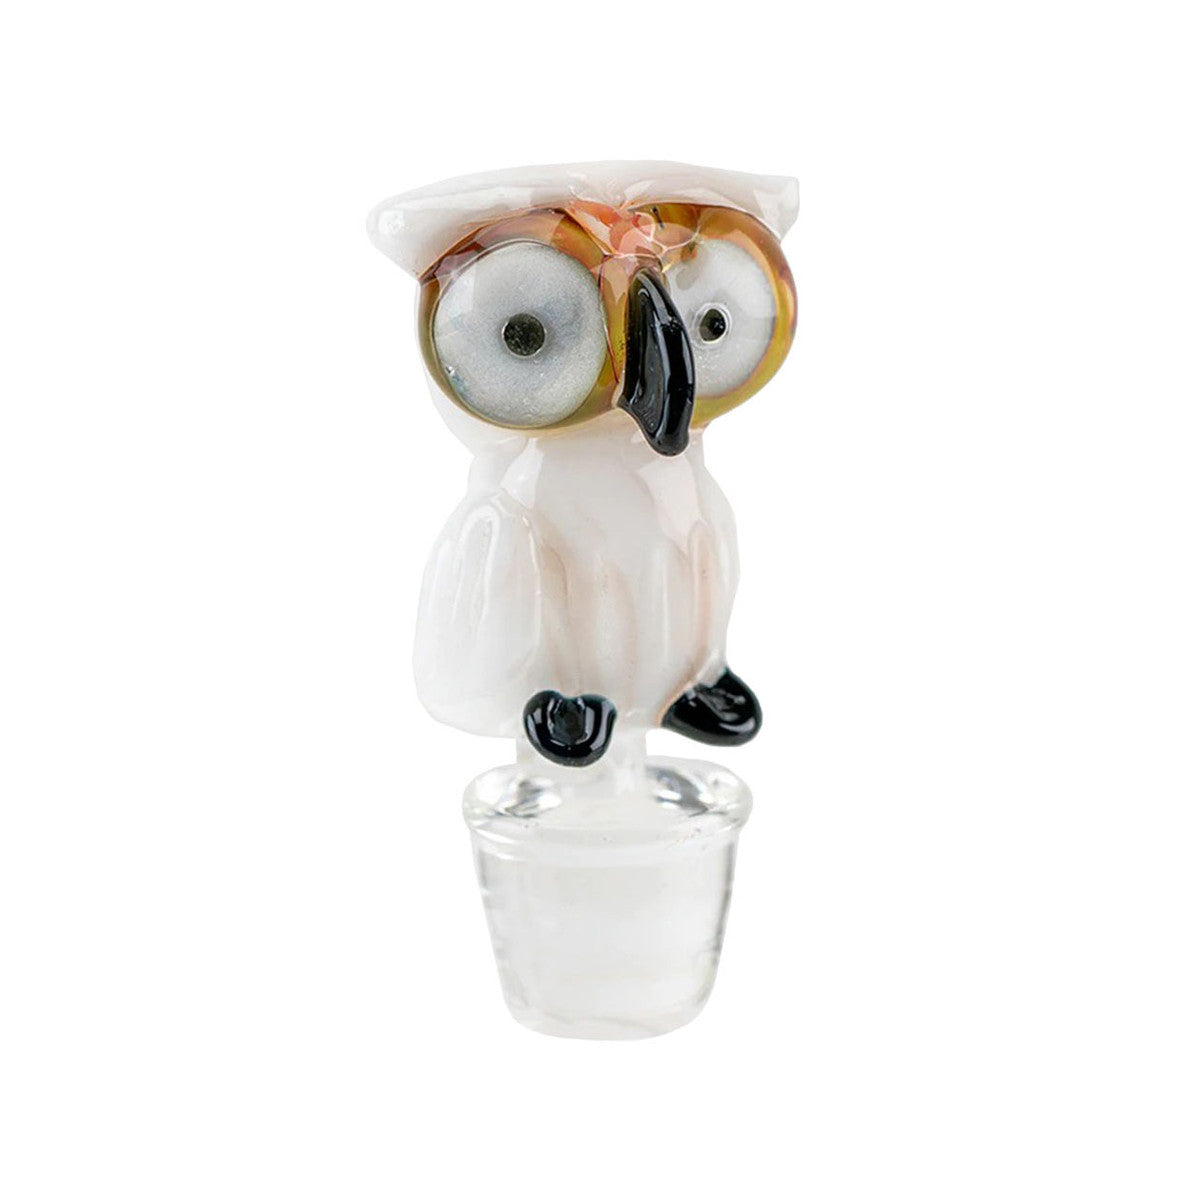 empire glassworks puffco peak pro ball cap owl